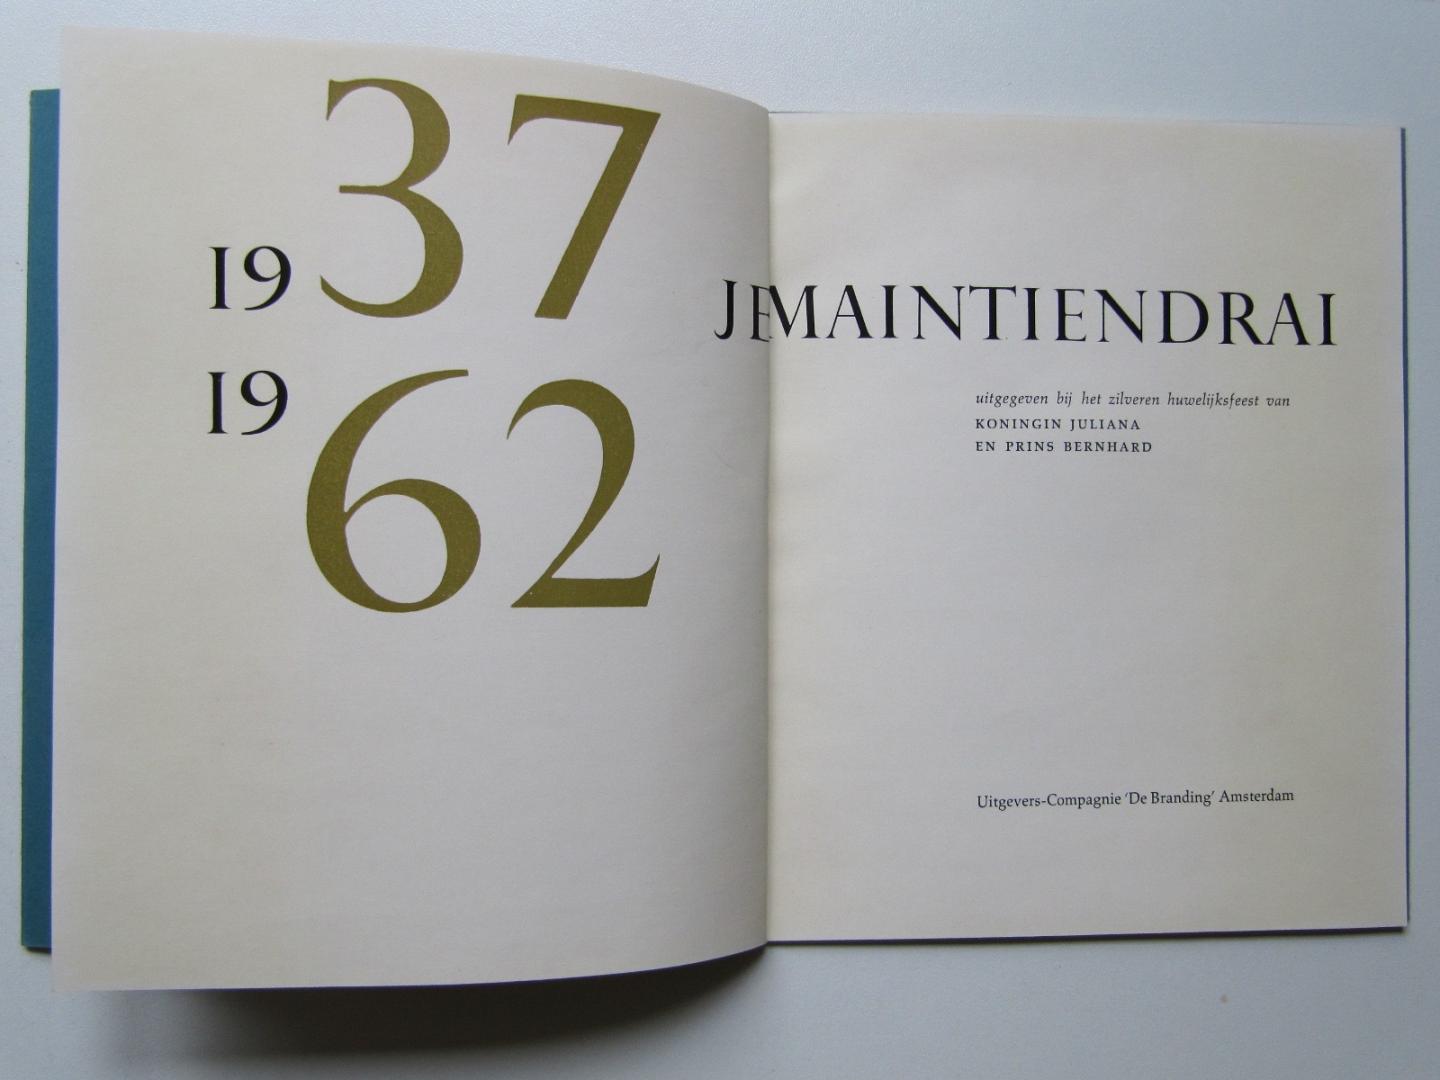 H Hendrikse - 1937- Je Maintiendrai -1962